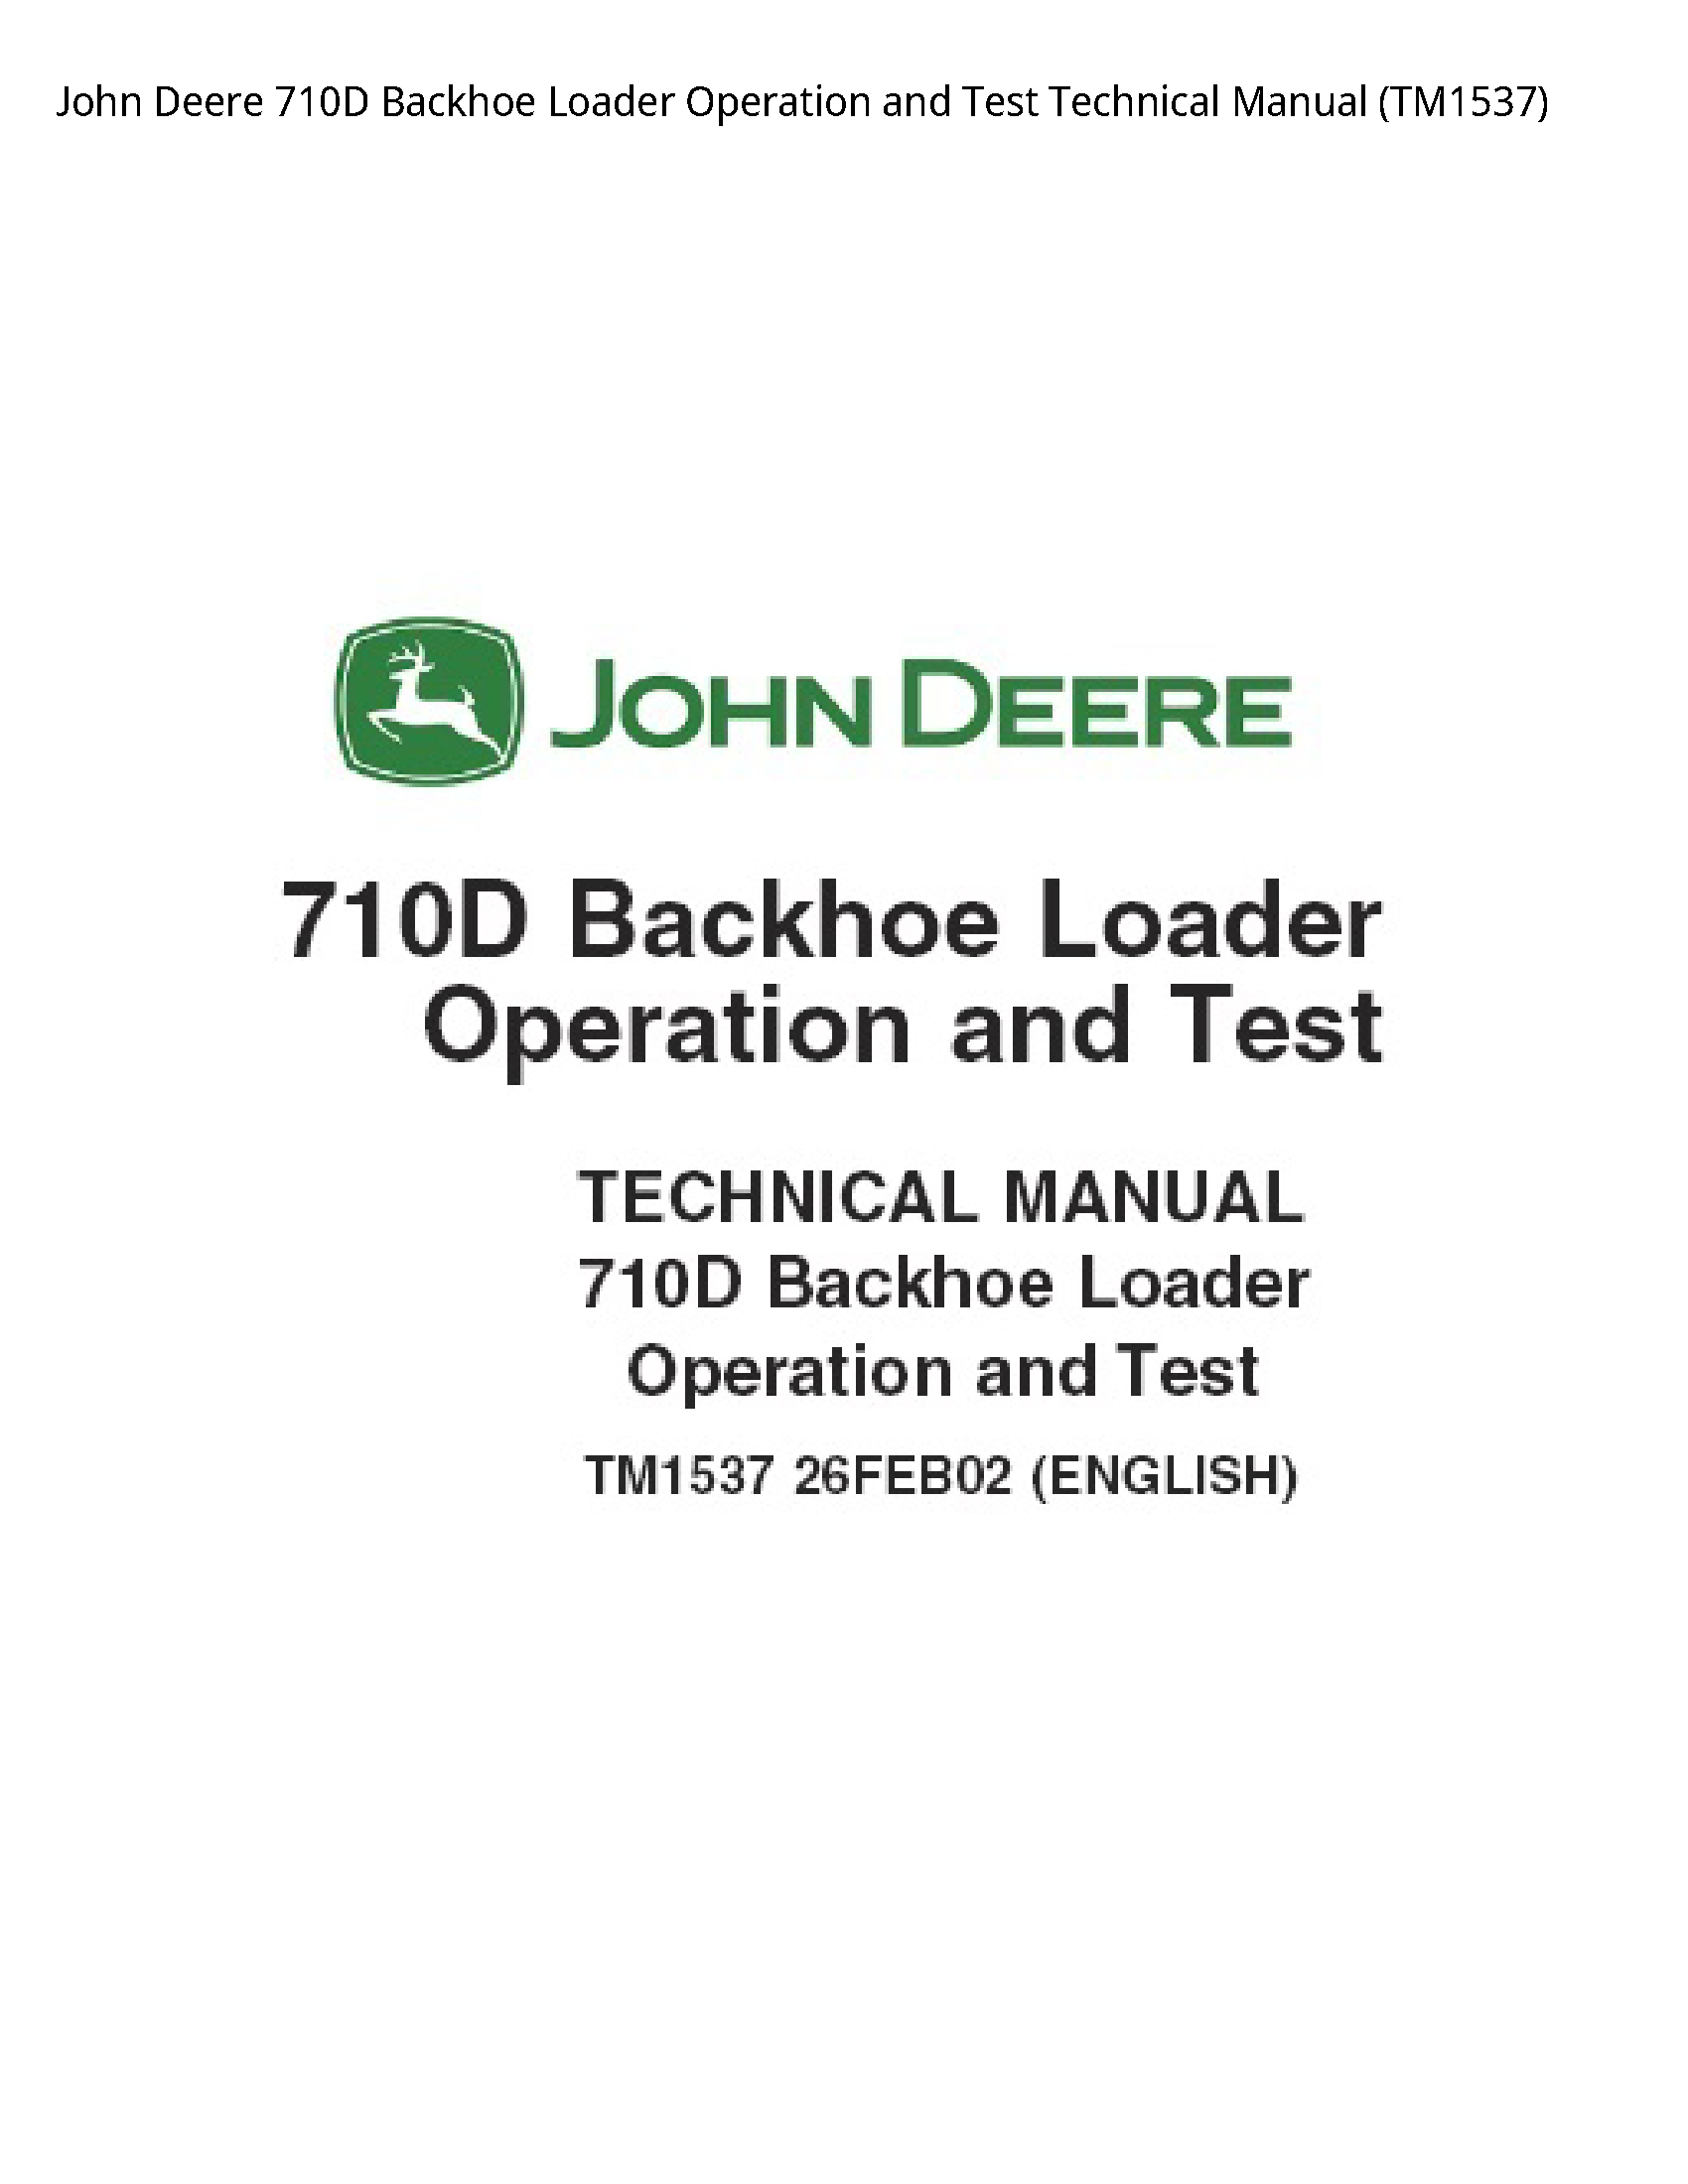 John Deere 710D Backhoe Loader Operation  Test Technical manual